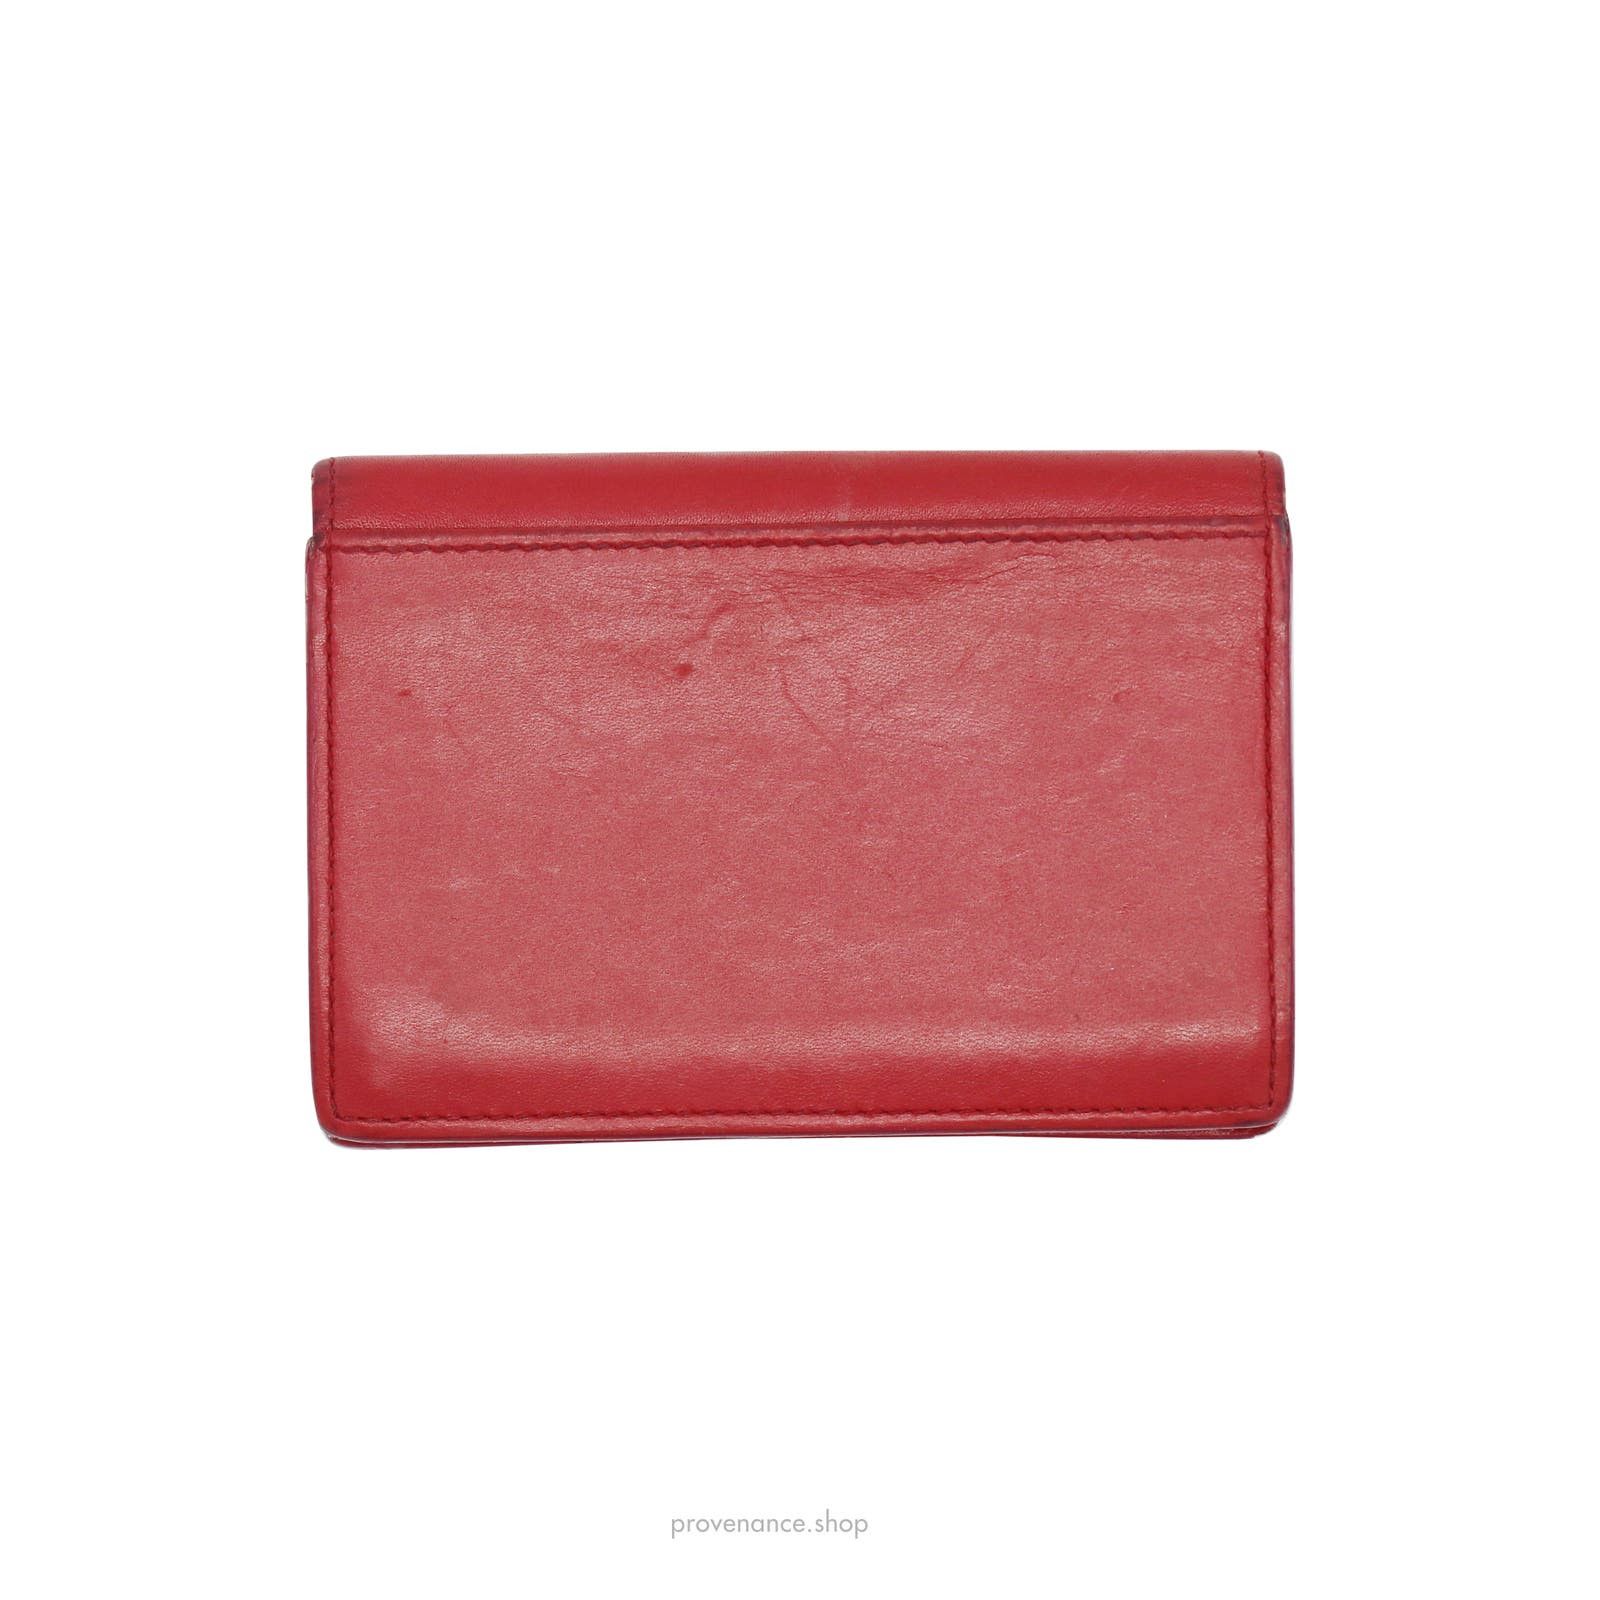 Saint Laurent Paris 🔴 Saint Laurent Paris SLP Card Holder - Poppy Red Leather Size ONE SIZE - 2 Preview